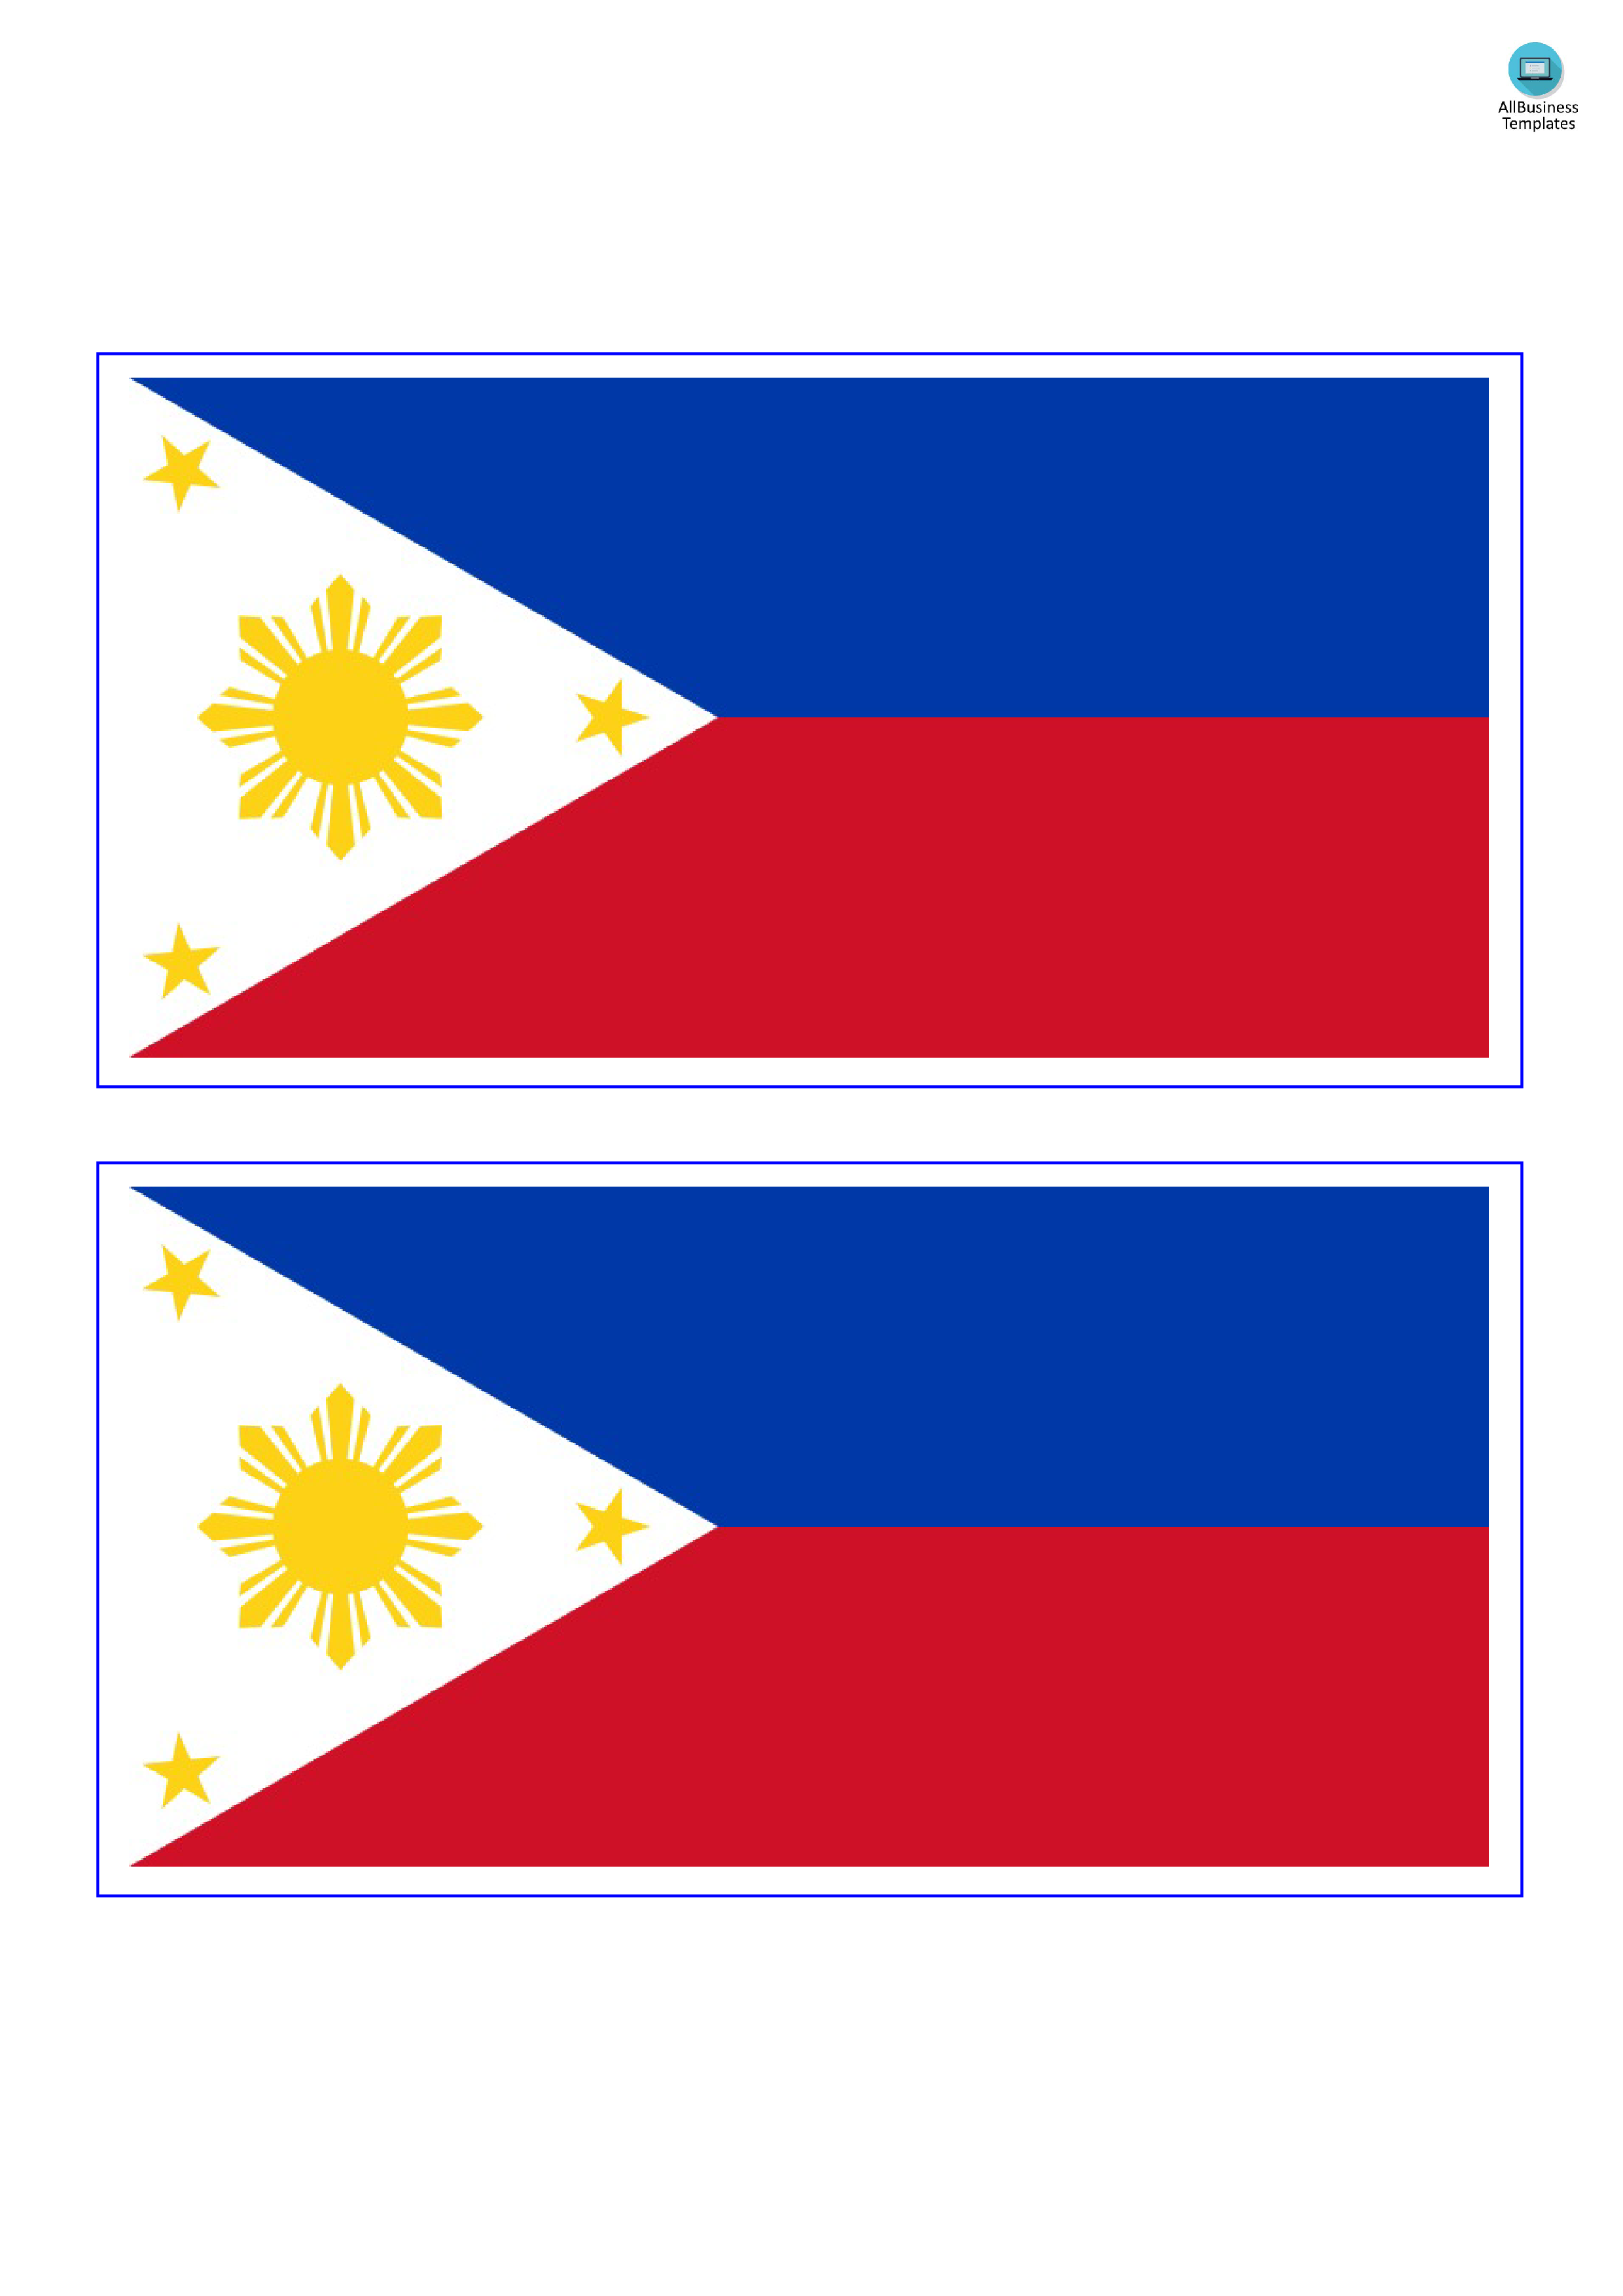 philippines flag plantilla imagen principal